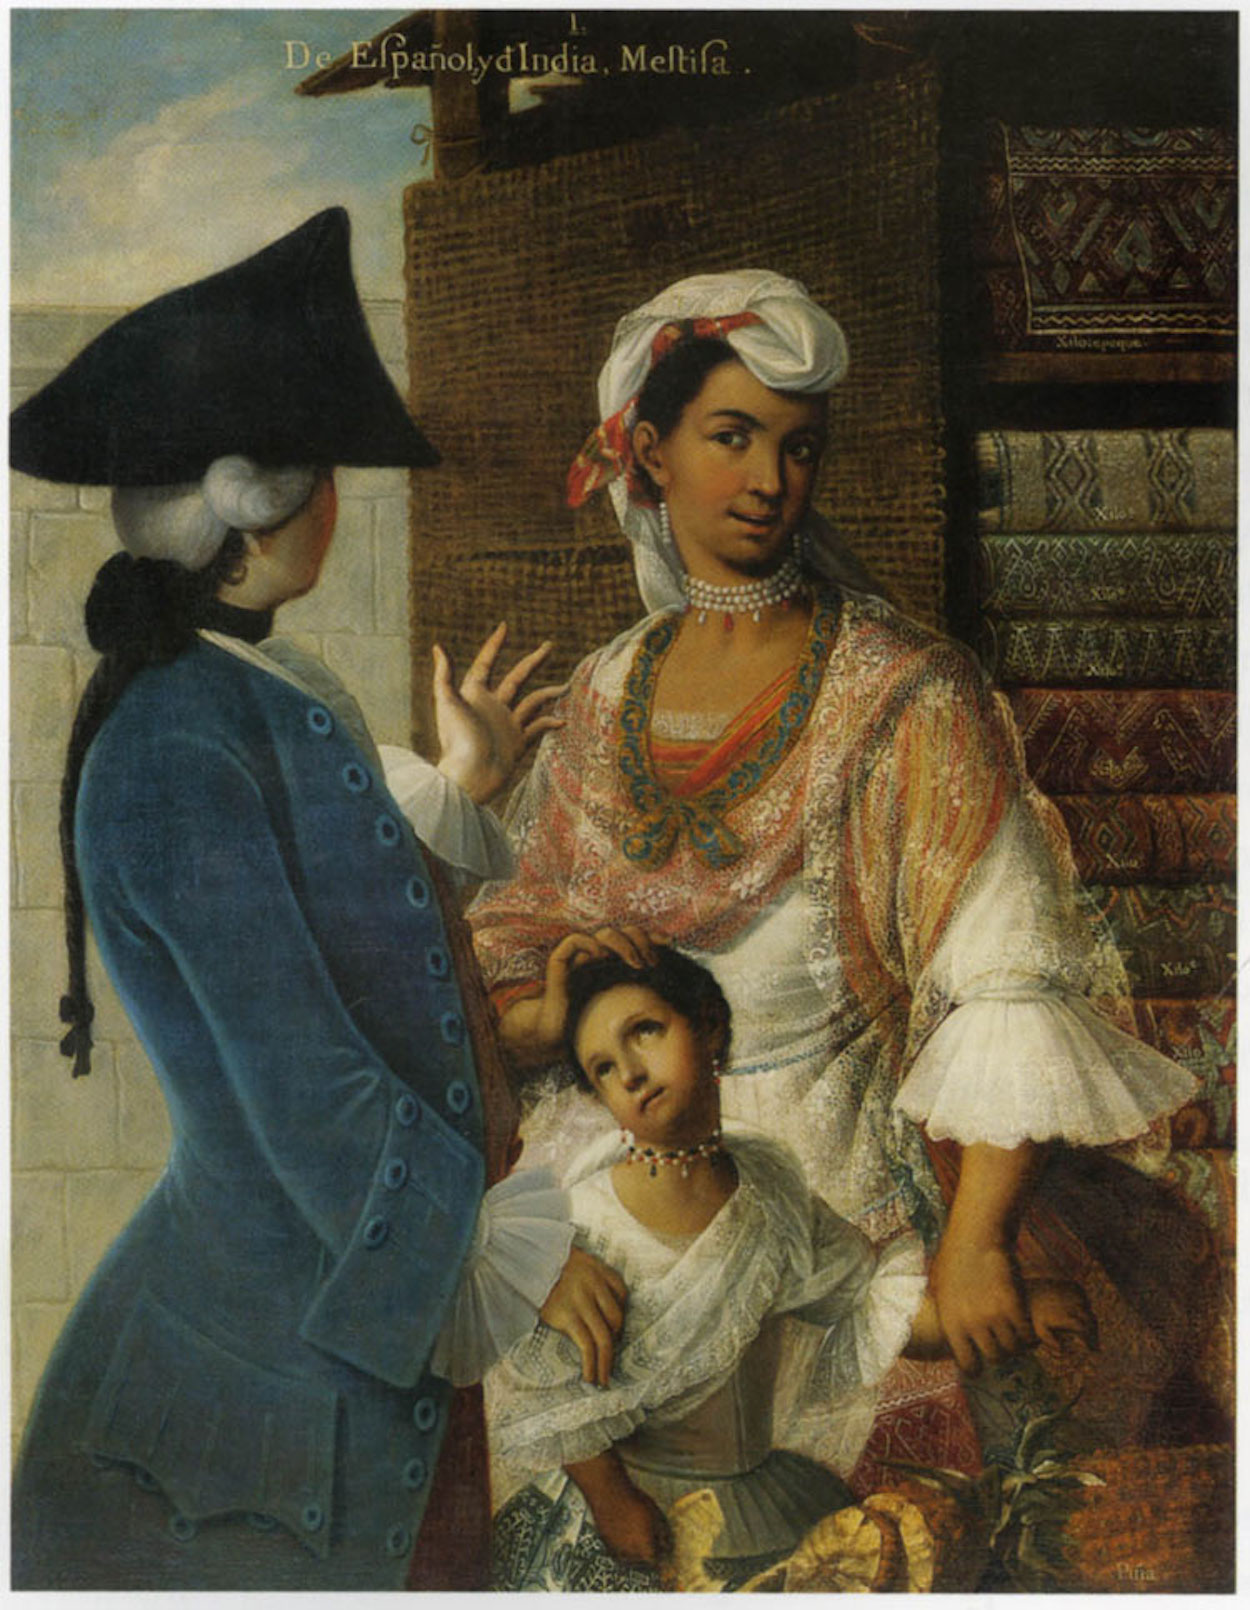 De Espagnõl e India, Mestiza by Miguel Mateo Maldonado y Cabrera - c. 1763 collezione privata